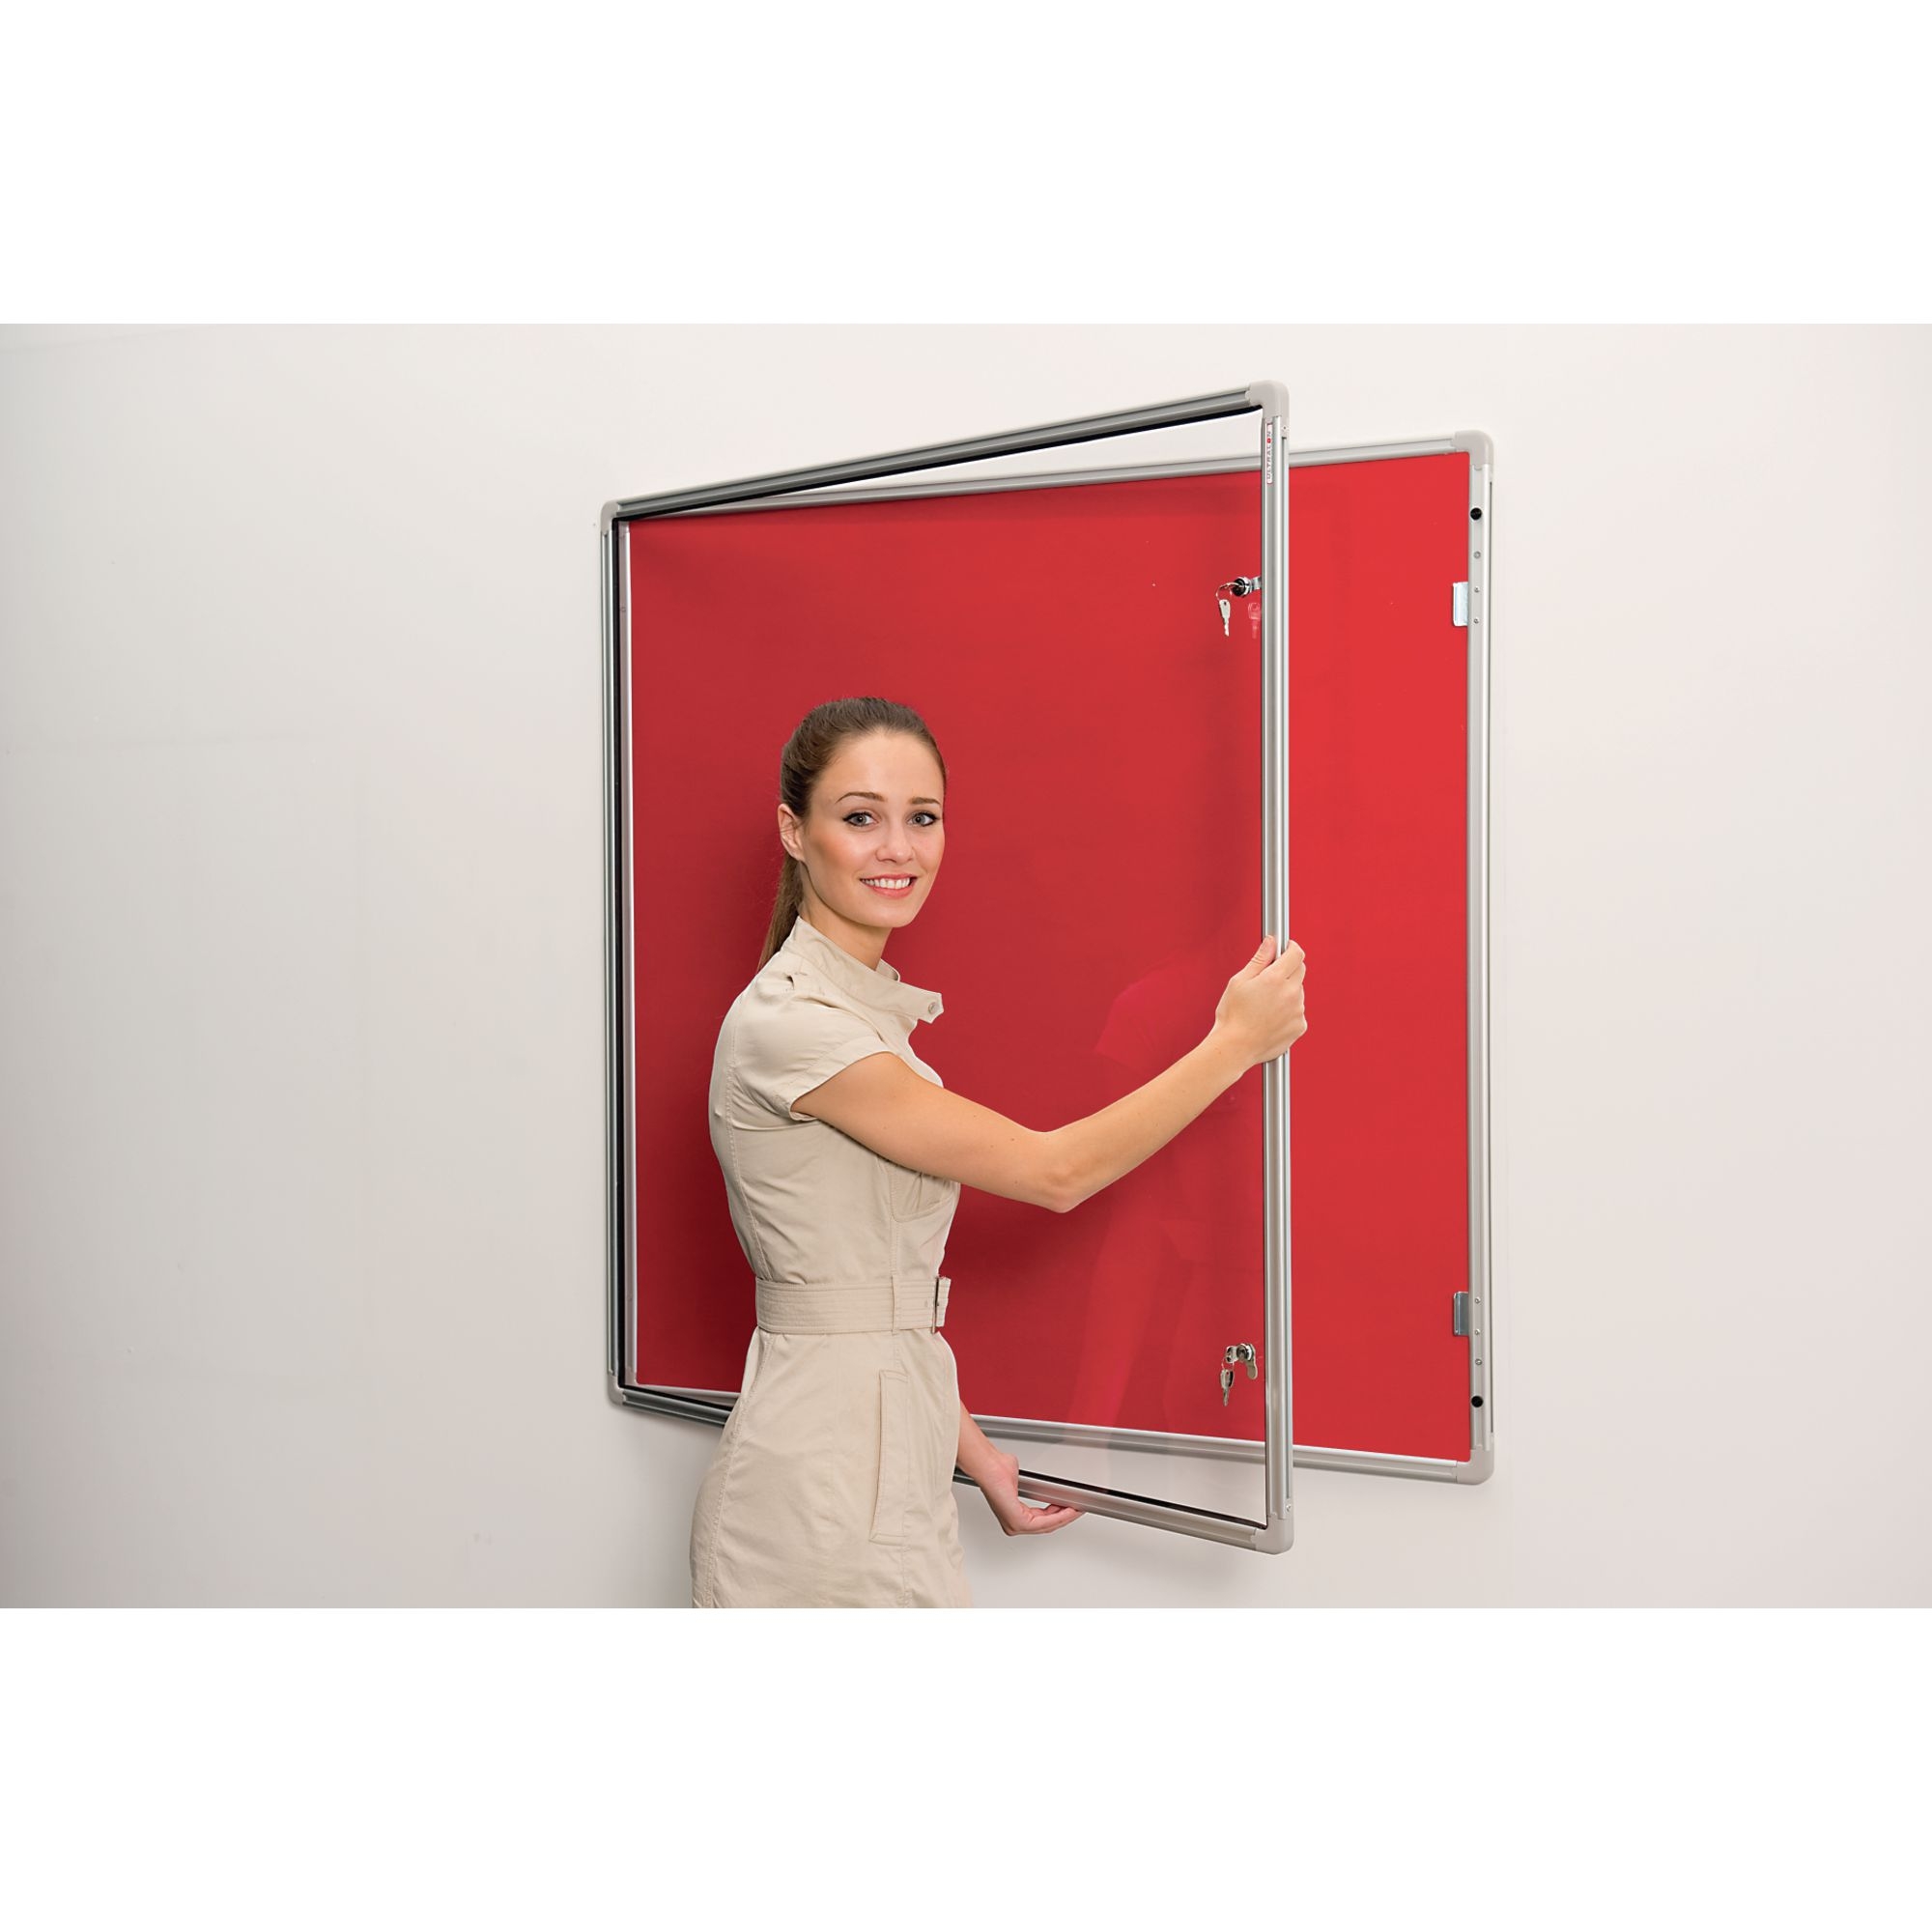 Lockable Aluminium Framed Noticeboards - Red 18x12